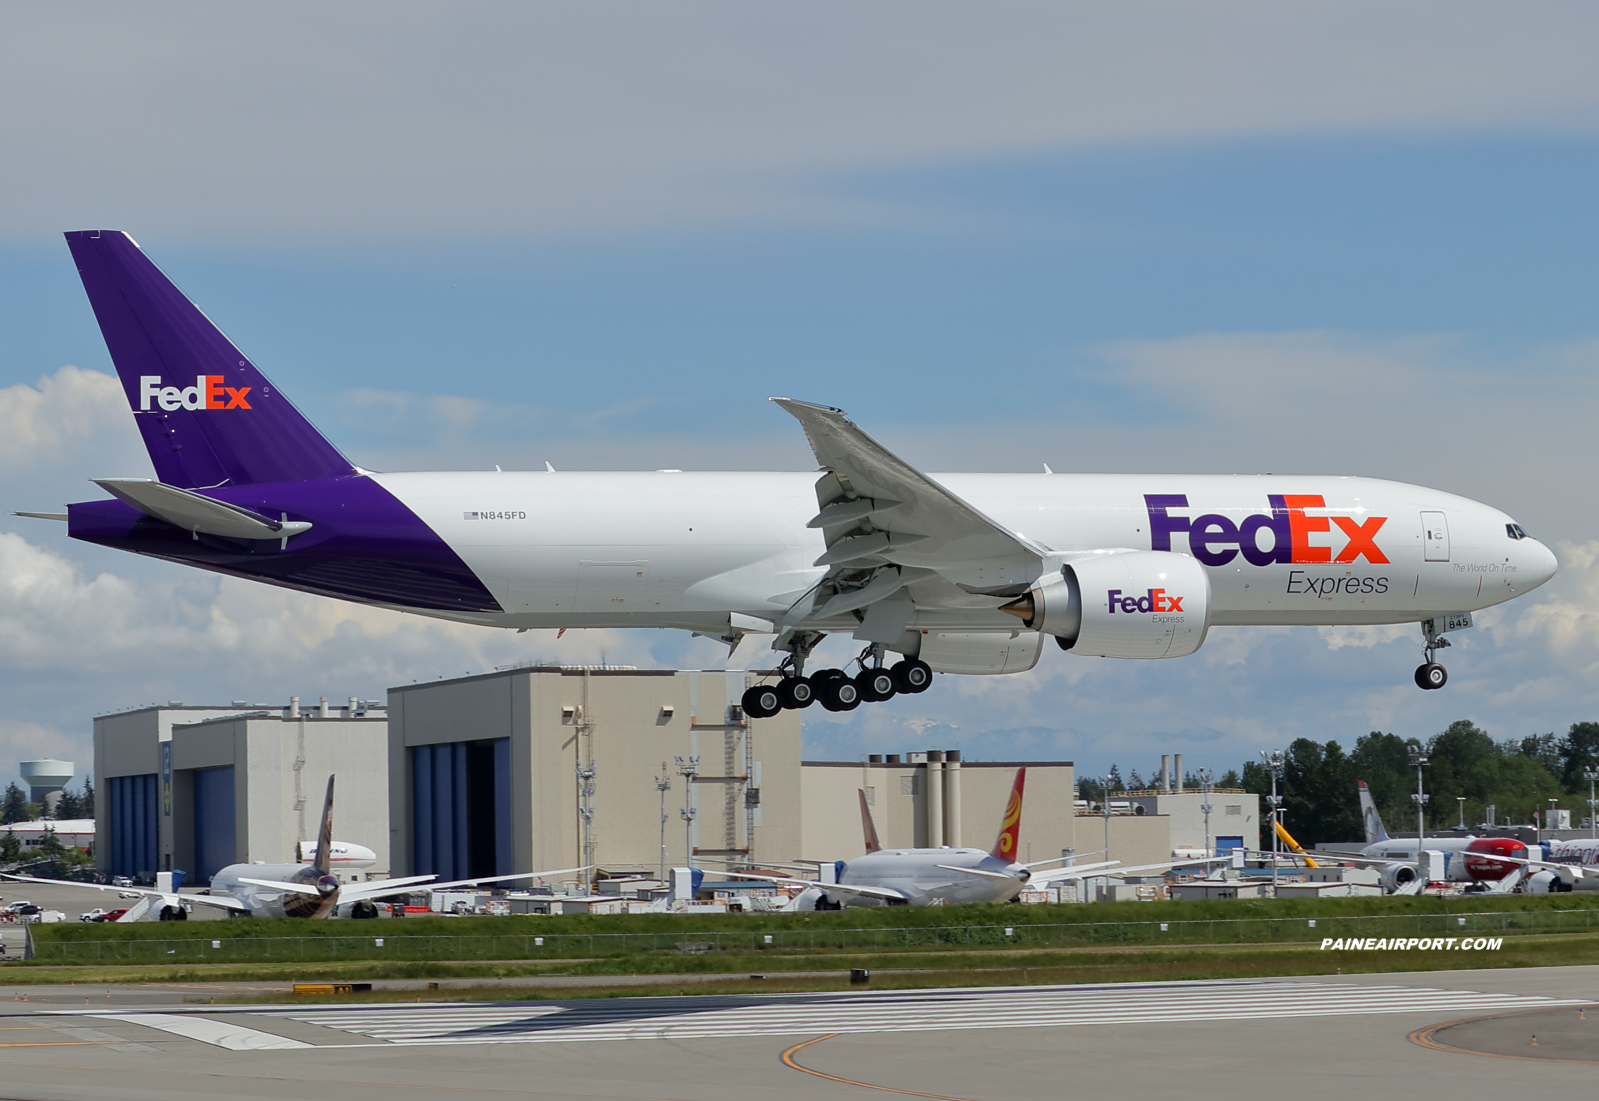 FedEx 777F N845FD at Paine Field